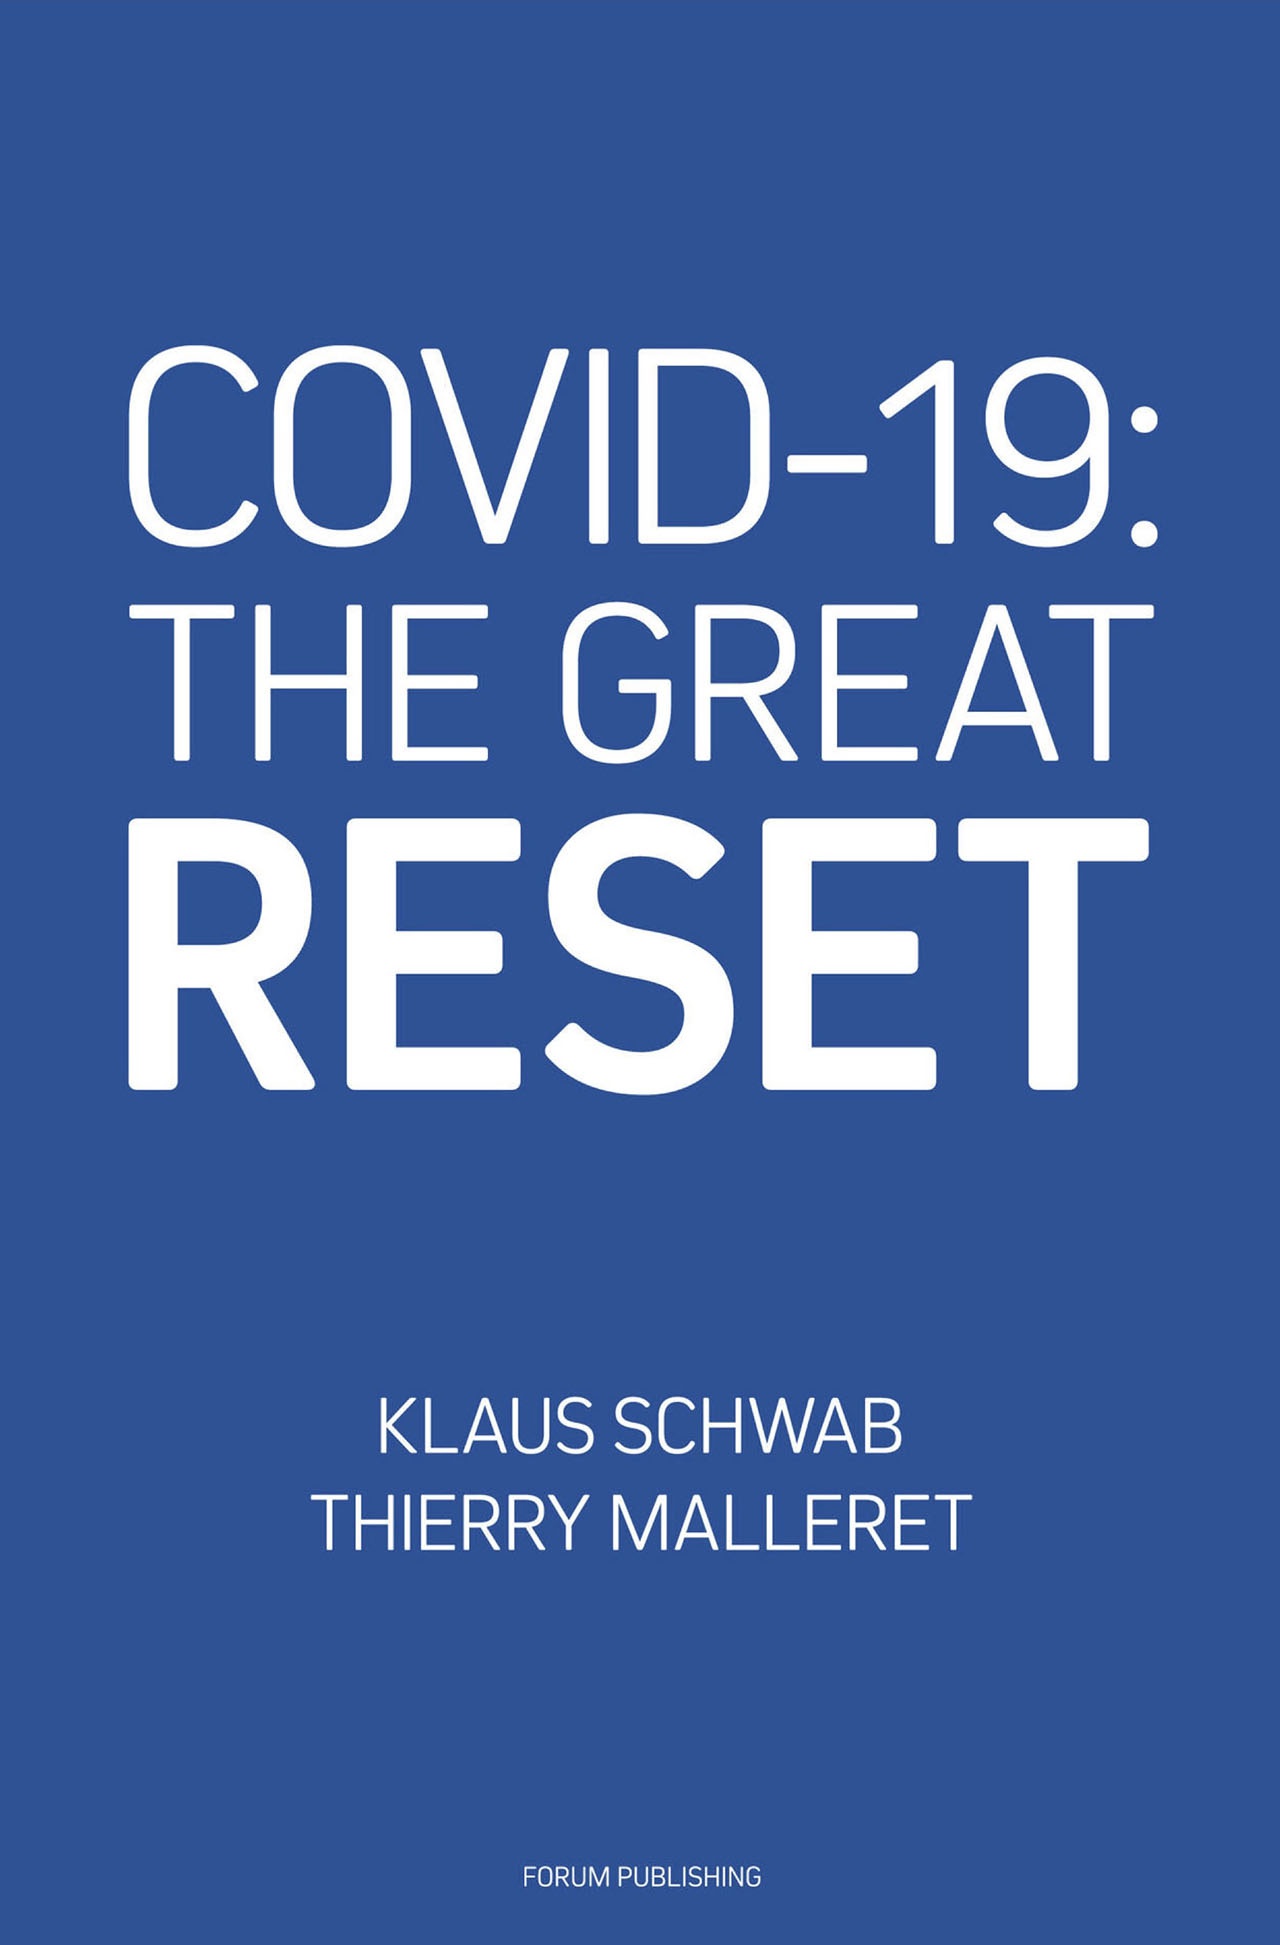 В своей книге «COVID-19: Великая перезагрузка» глобалист Клаус Шваб пишет о том, что пандемия коронавируса была мгновенной проверкой рефлексов человечества на неизвестную угрозу. Но ему известную.